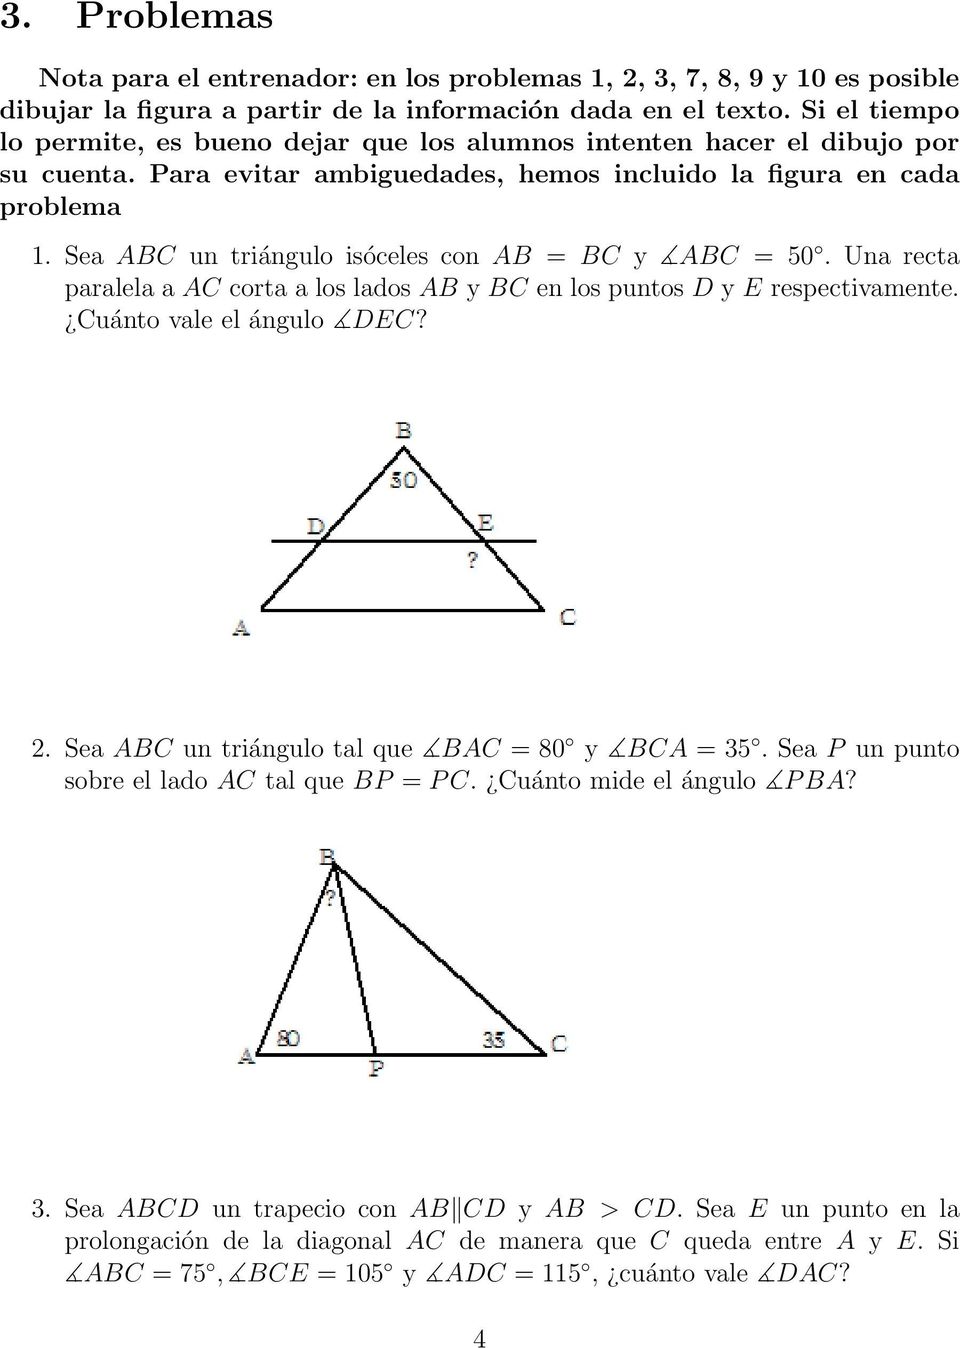 Sea ABC un triángulo isóceles con AB = BC y ABC = 50. Una recta paralela a AC corta a los lados AB y BC en los puntos D y E respectivamente. Cuánto vale el ángulo DEC? 2.